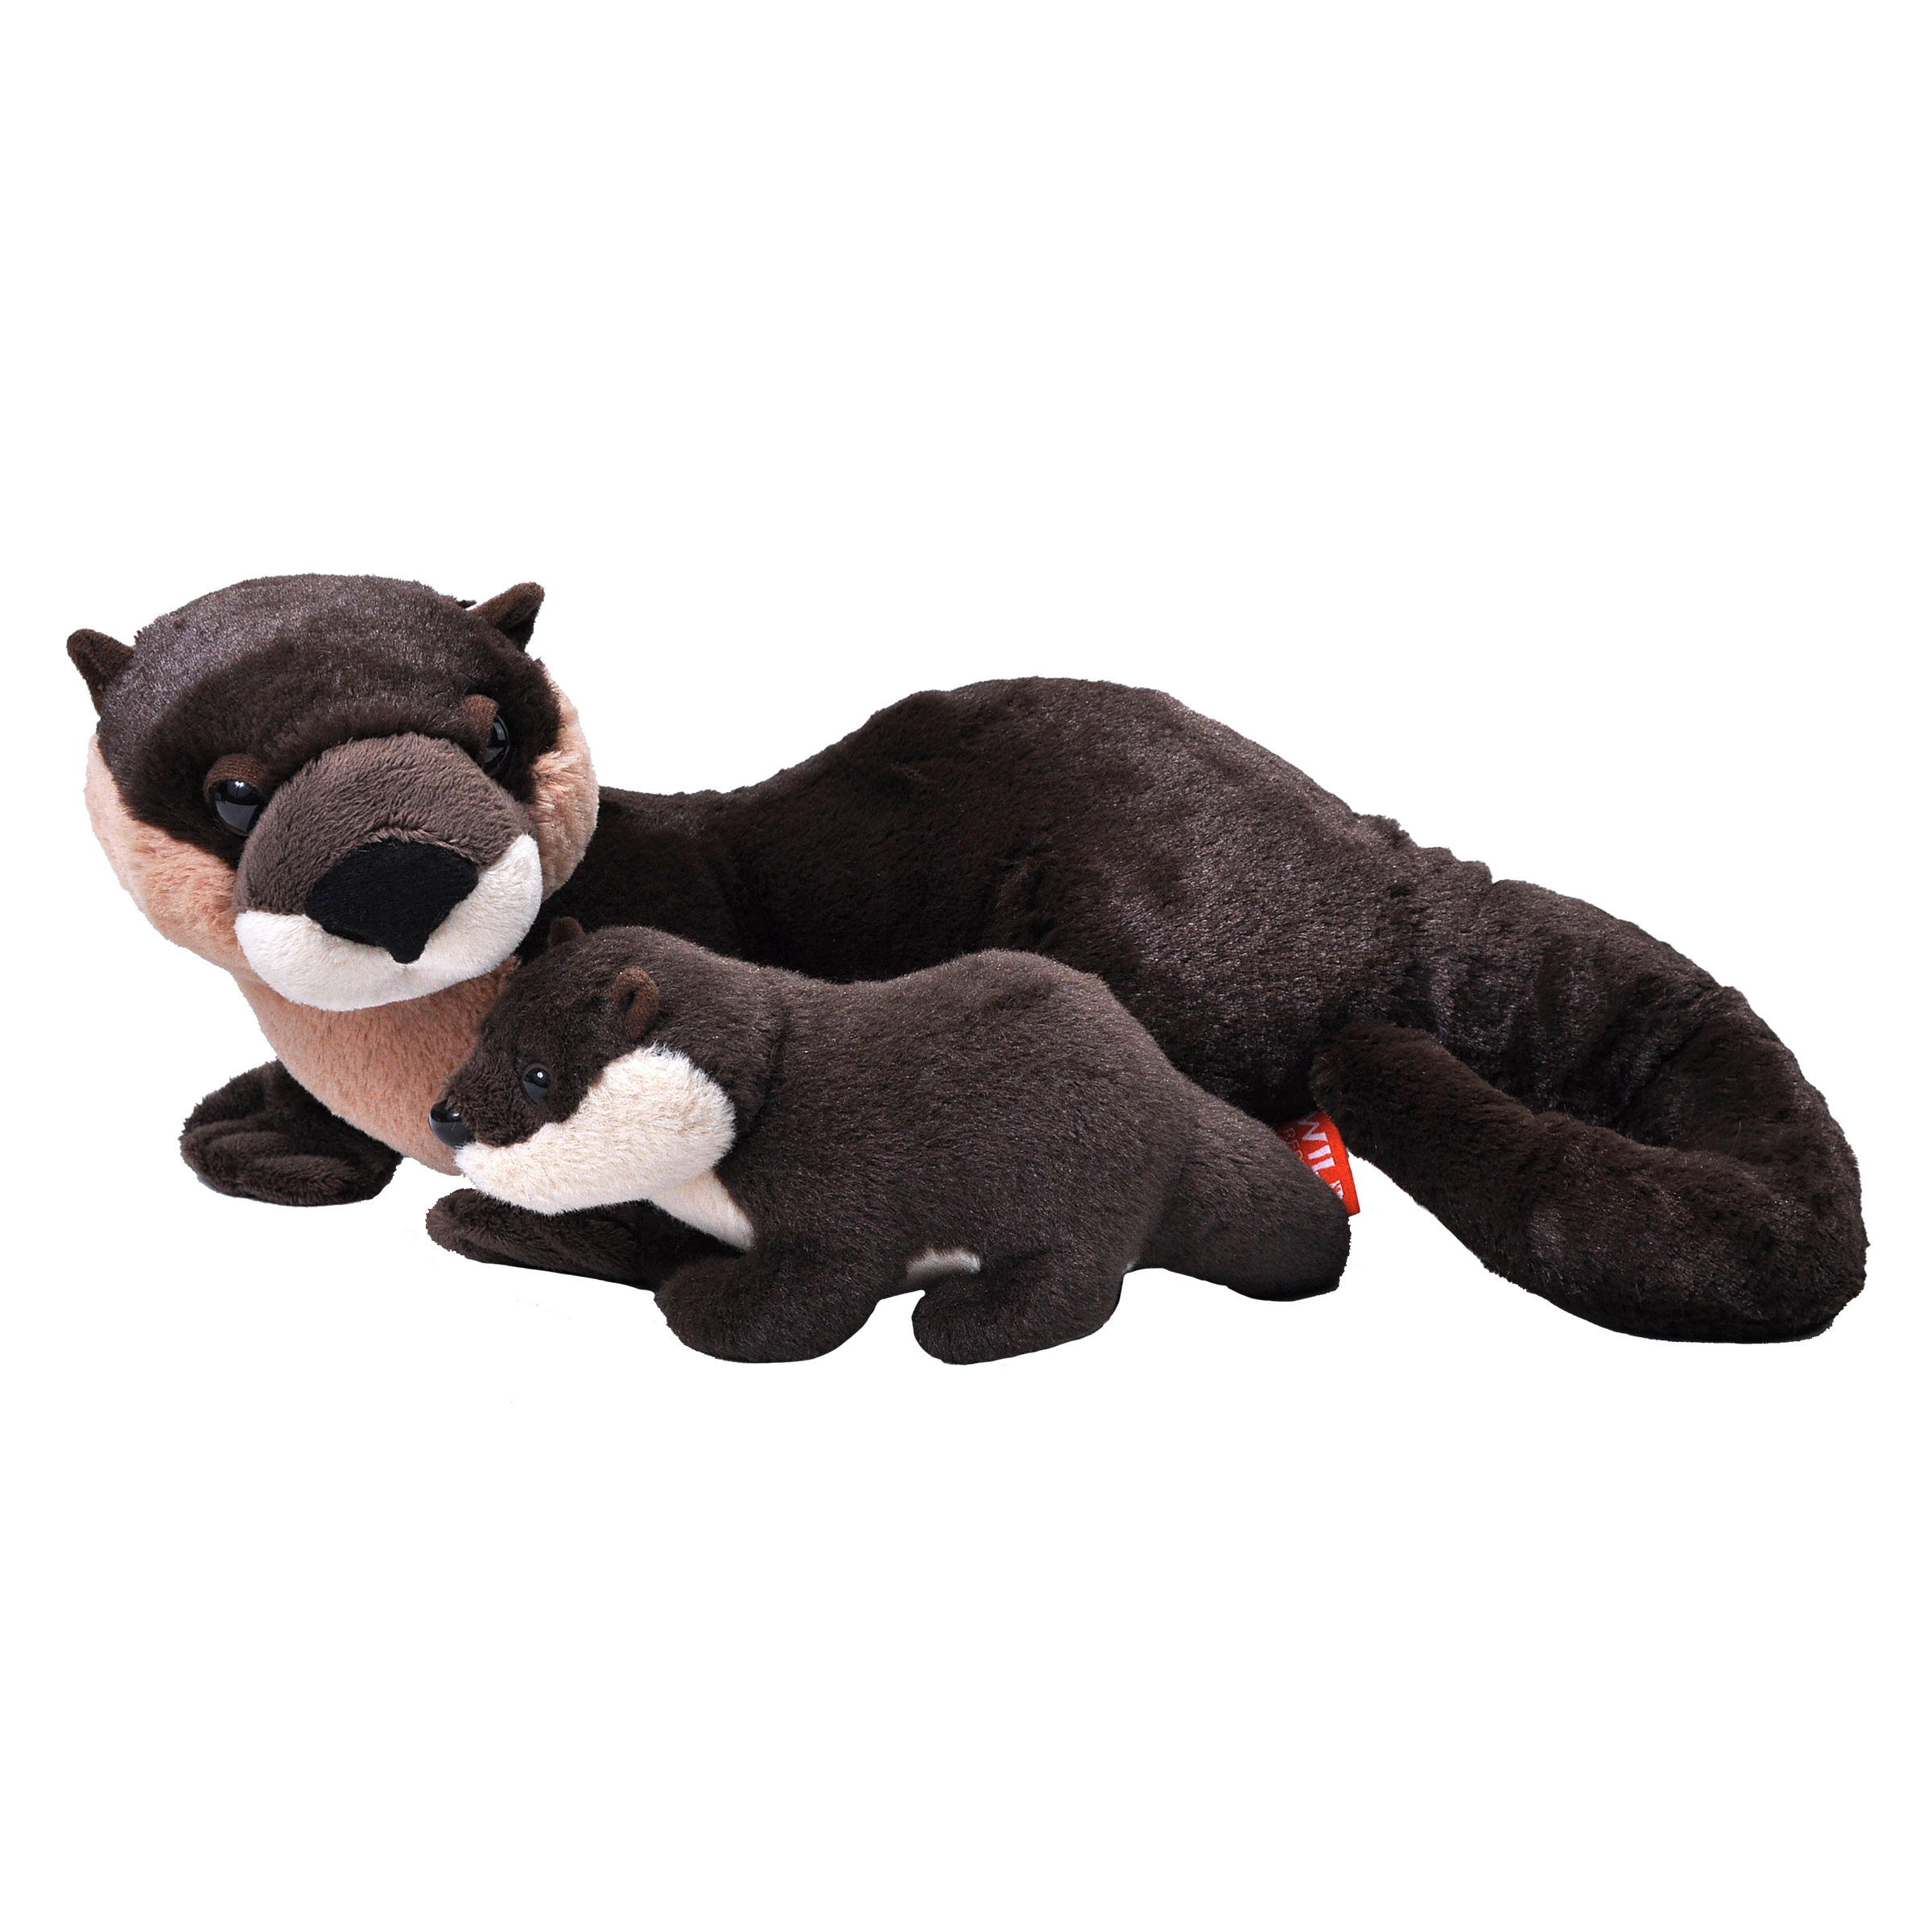 Pluche knuffel dieren familie rivier otters 36 cm